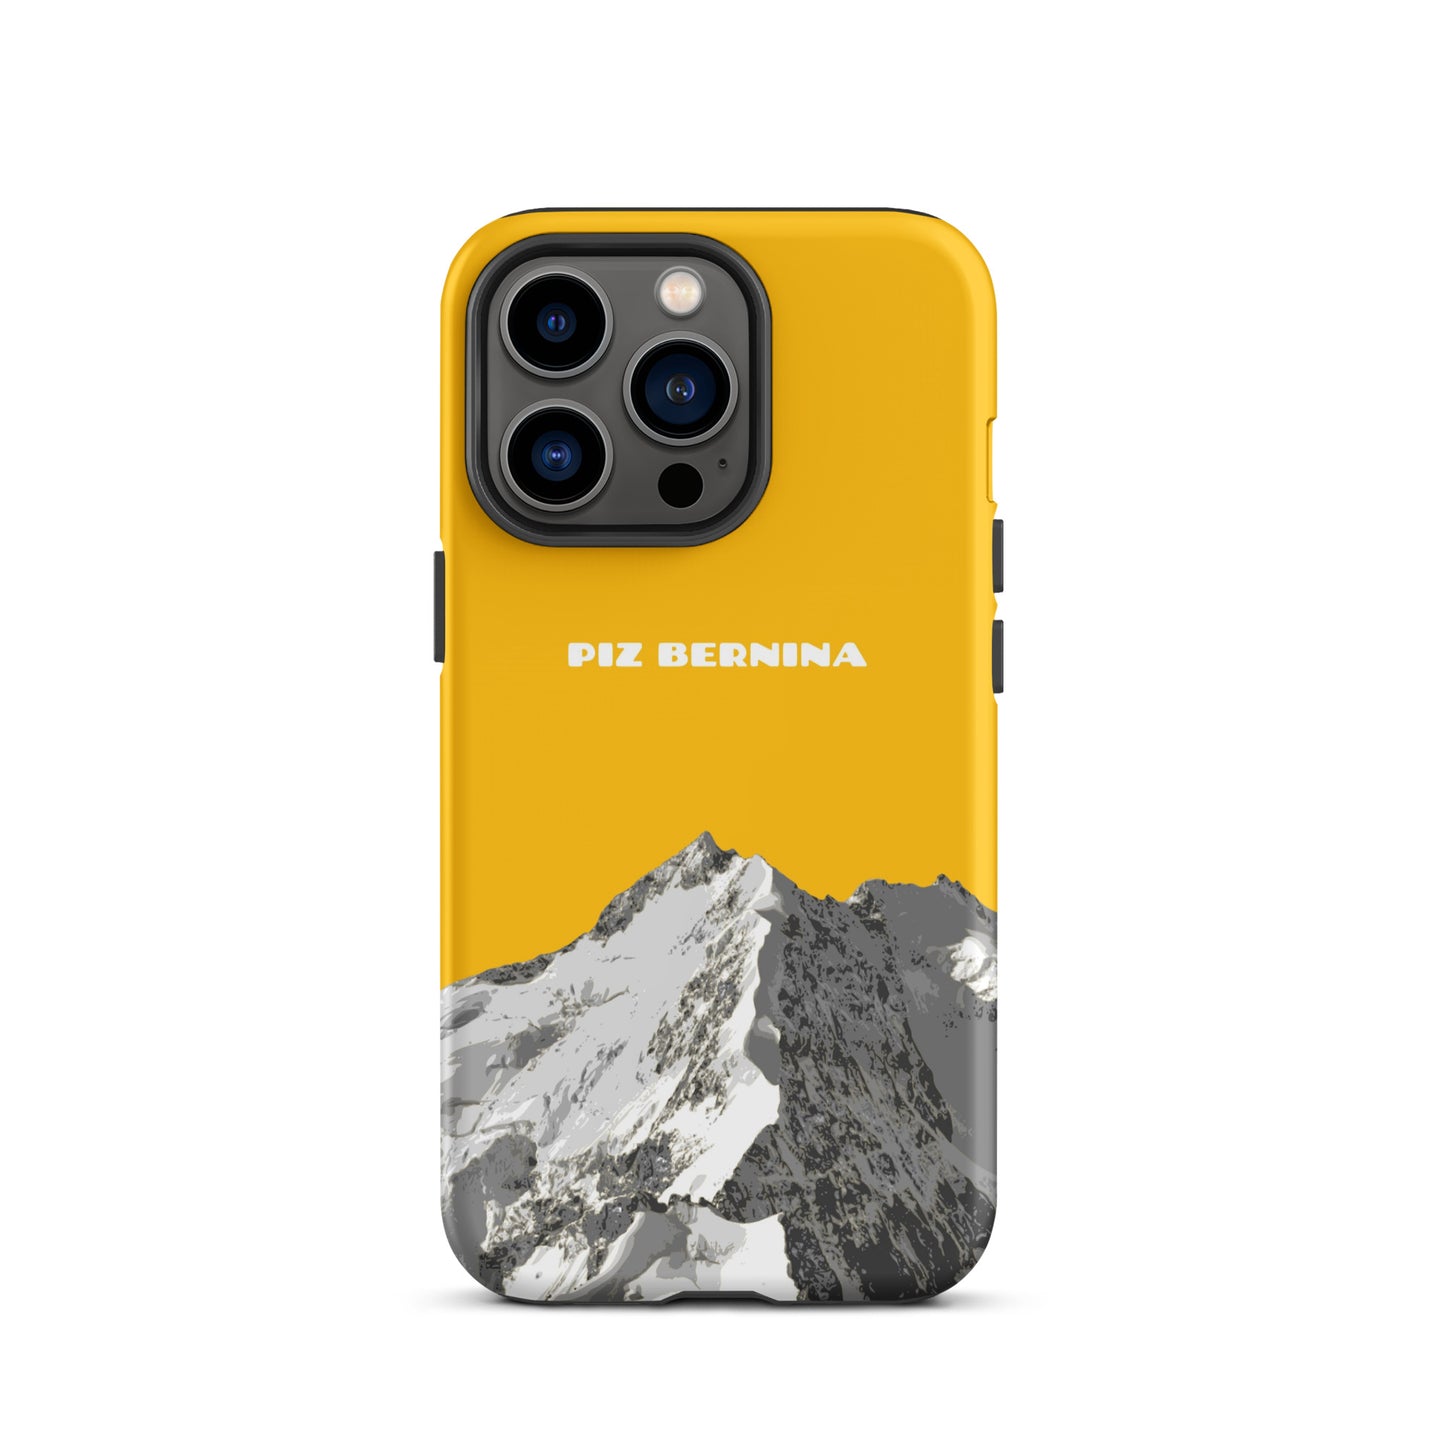 Hülle für das iPhone 13 Pro von Apple in der Farbe Goldgelb, dass den Piz Bernina in Graubünden zeigt.